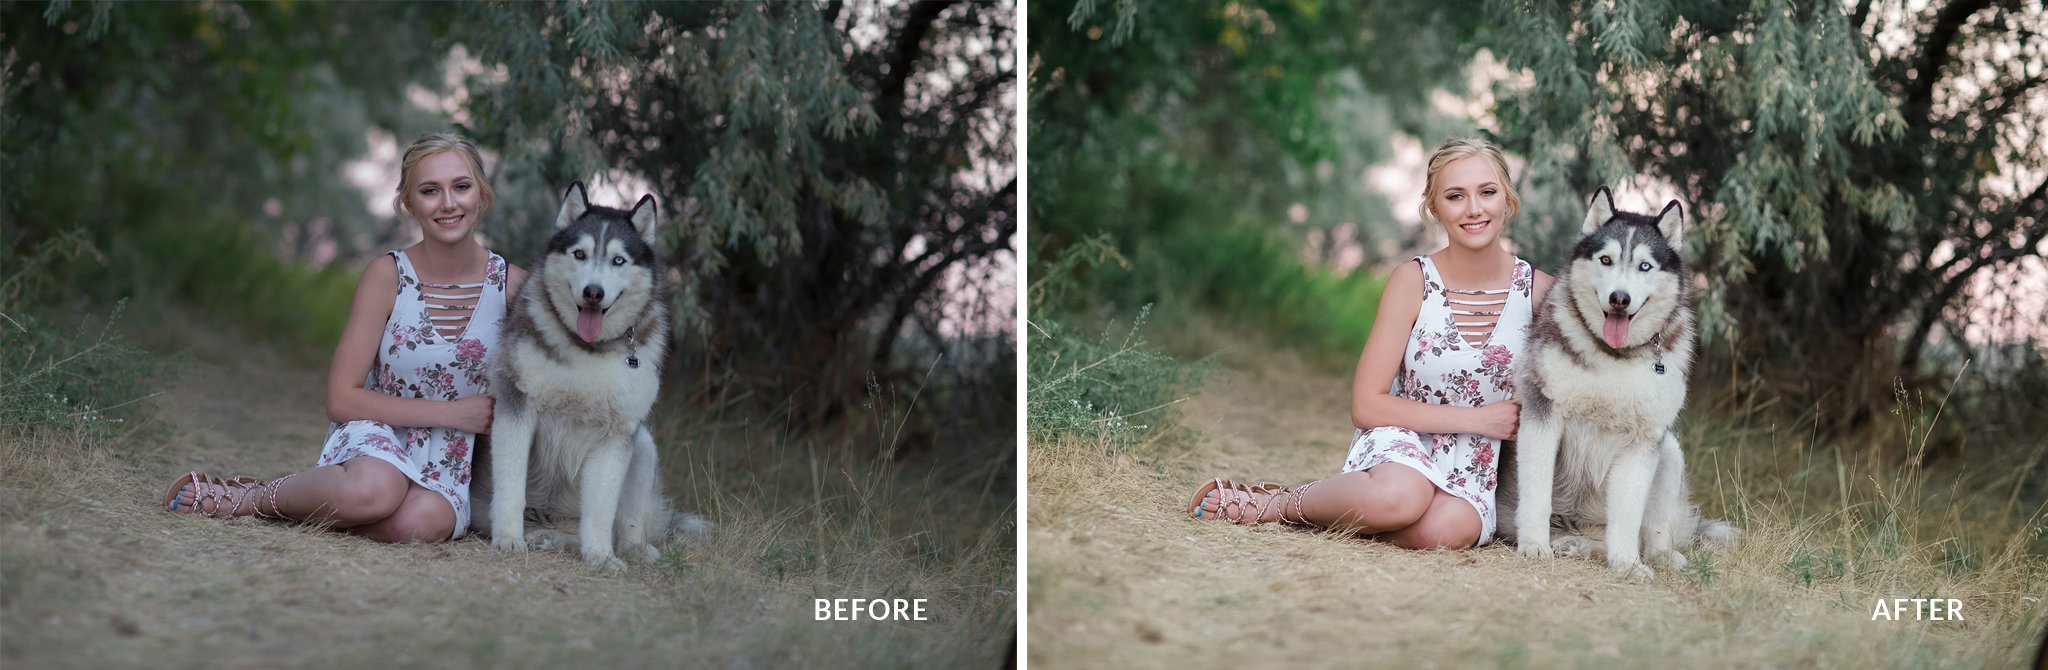 Foto de antes y después con Pretty Presets Clean Edit Portrait Workflow Presets